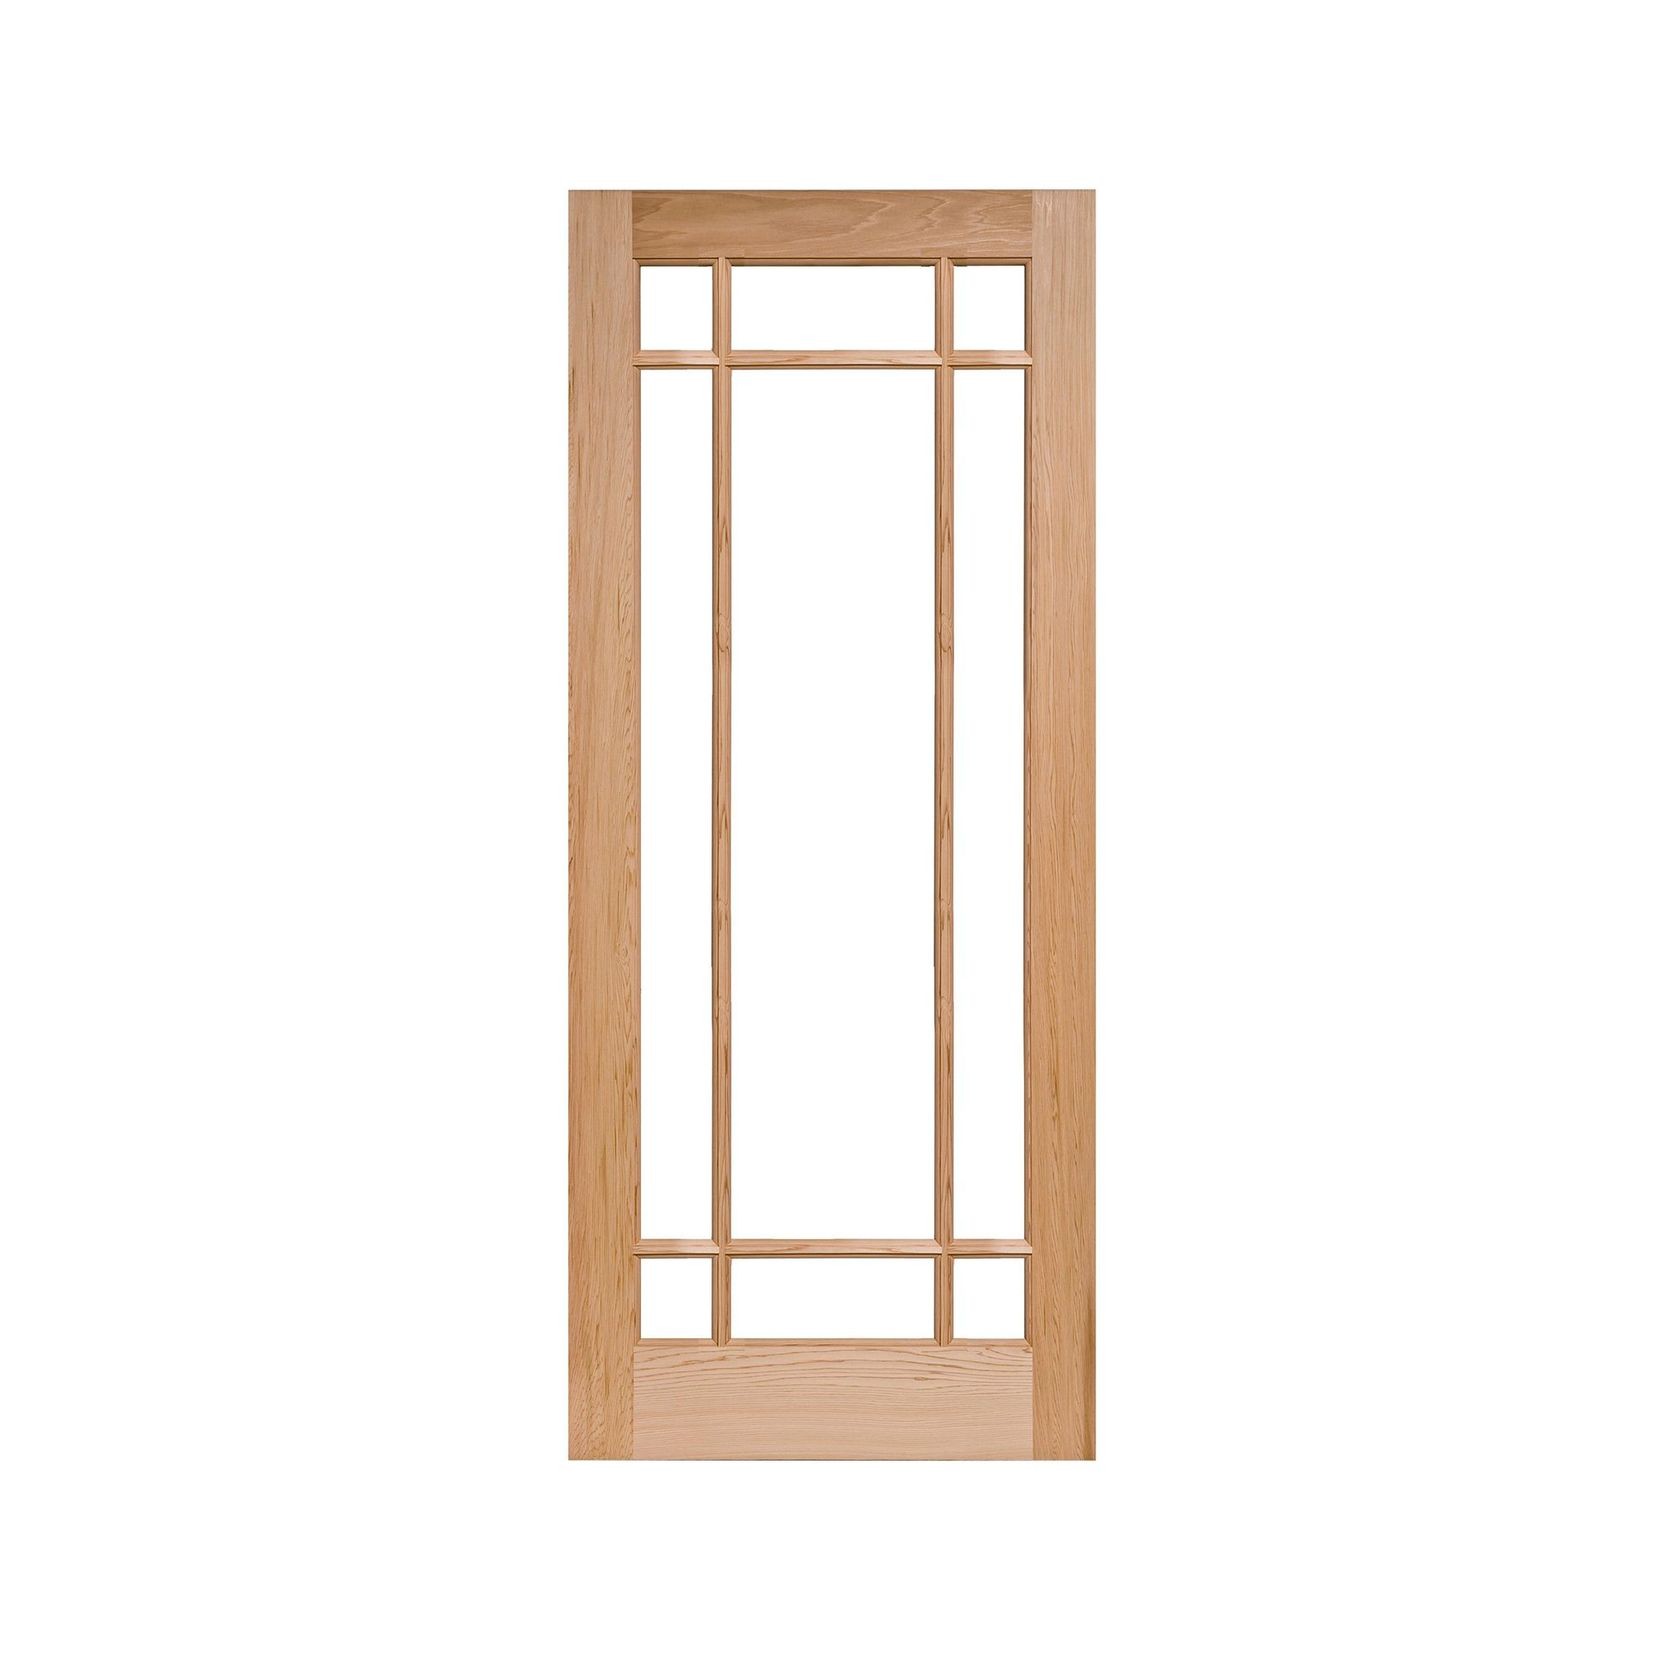 IF9 - Wood Door gallery detail image